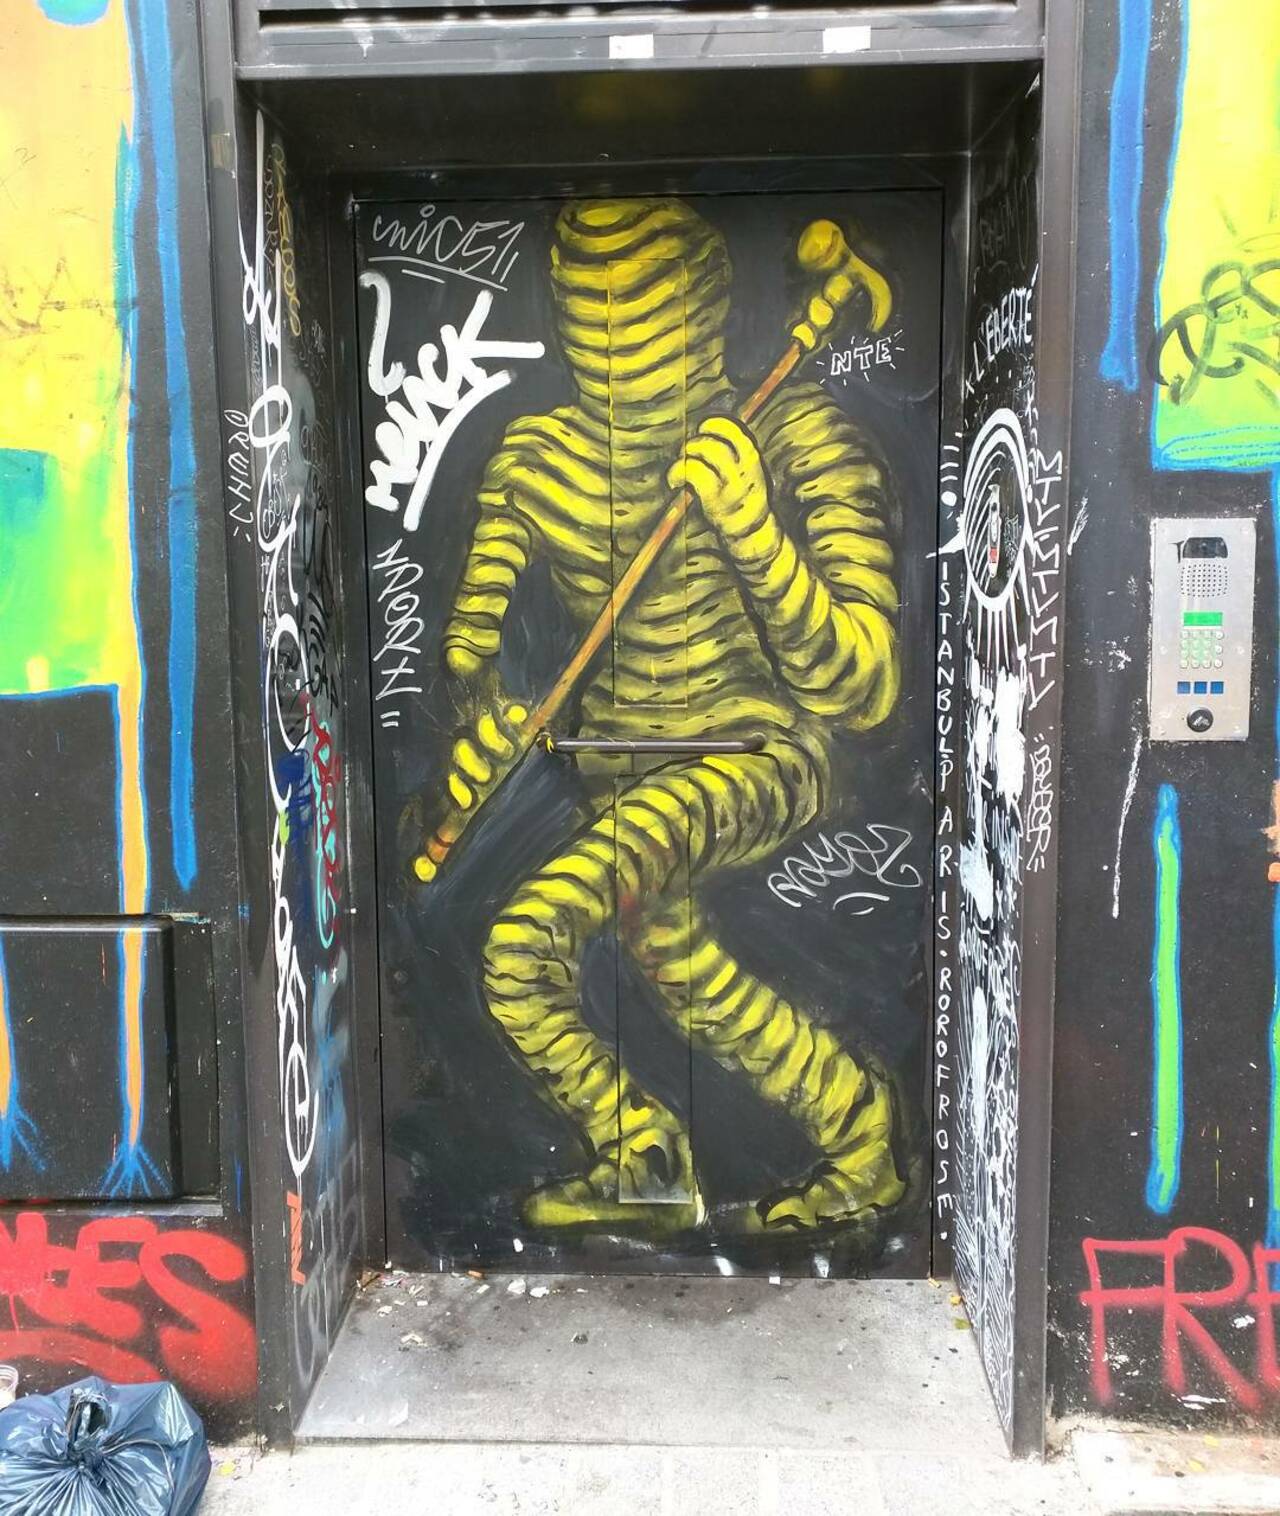 circumjacent_fr: #Paris #graffiti photo by alphaquadra http://ift.tt/1KOsgdQ #StreetArt http://t.co/zXCL6CaiNk